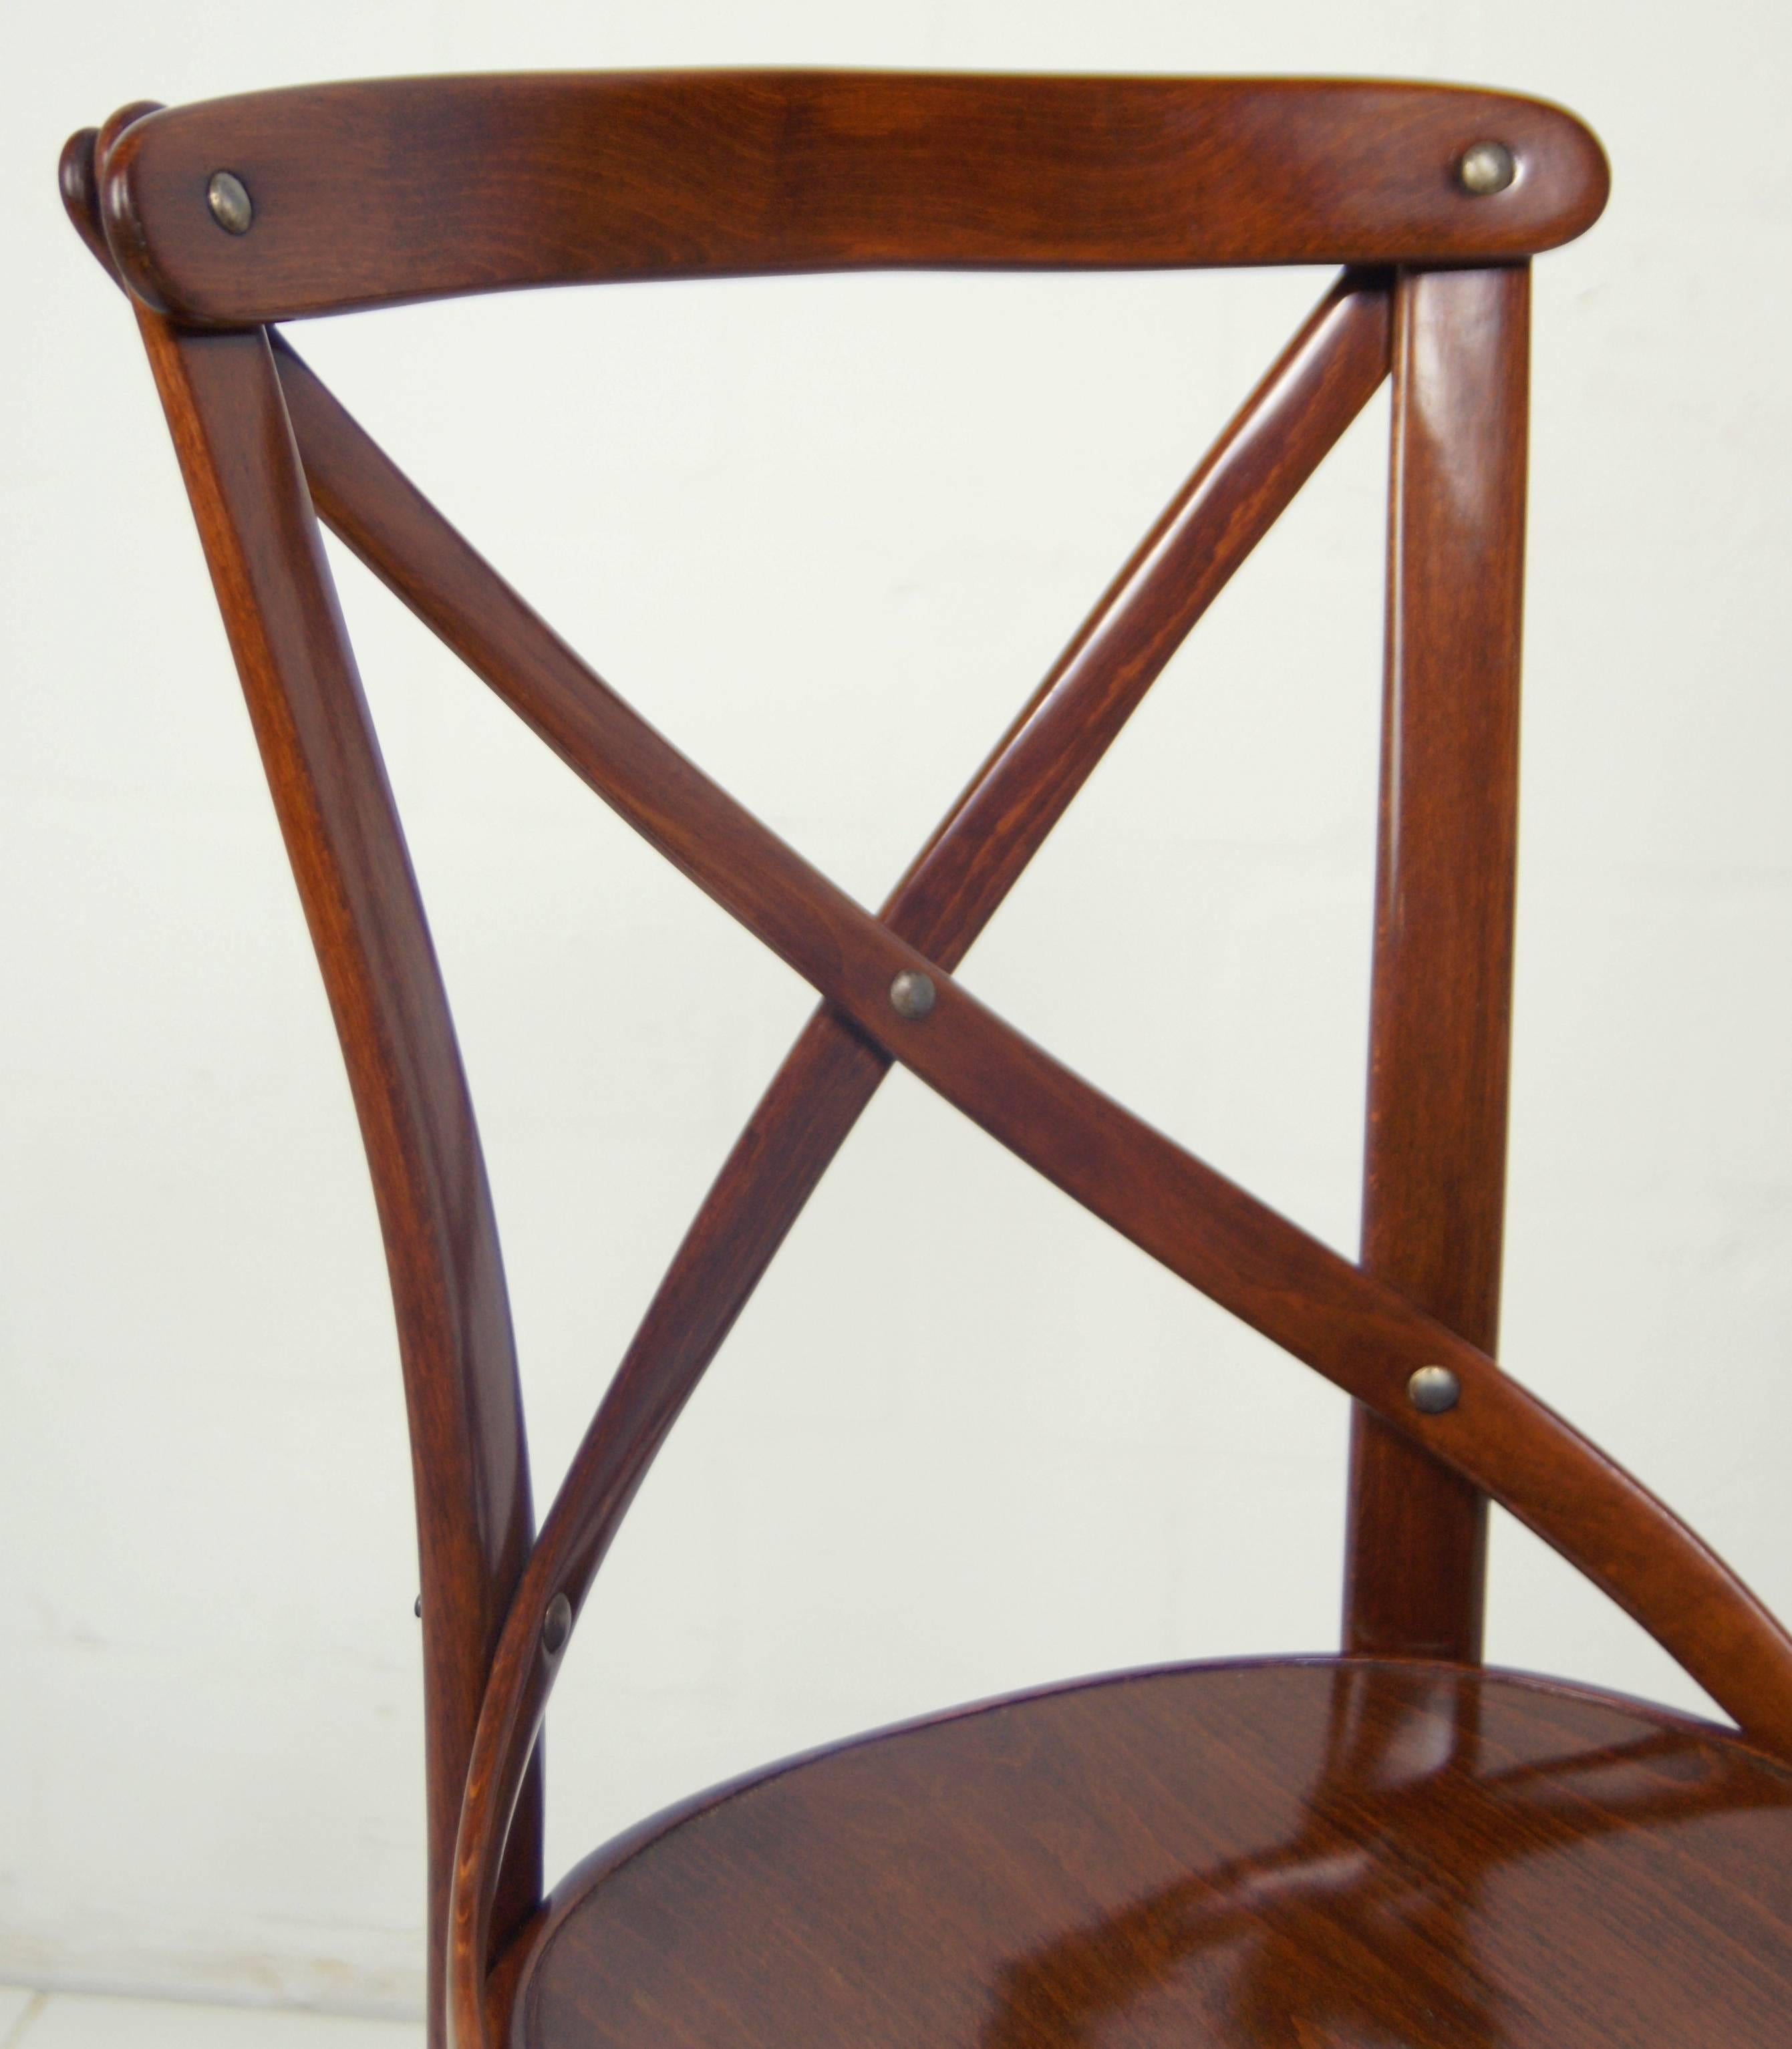 Beech Slatted Chair Thonet-Armchair No. 91